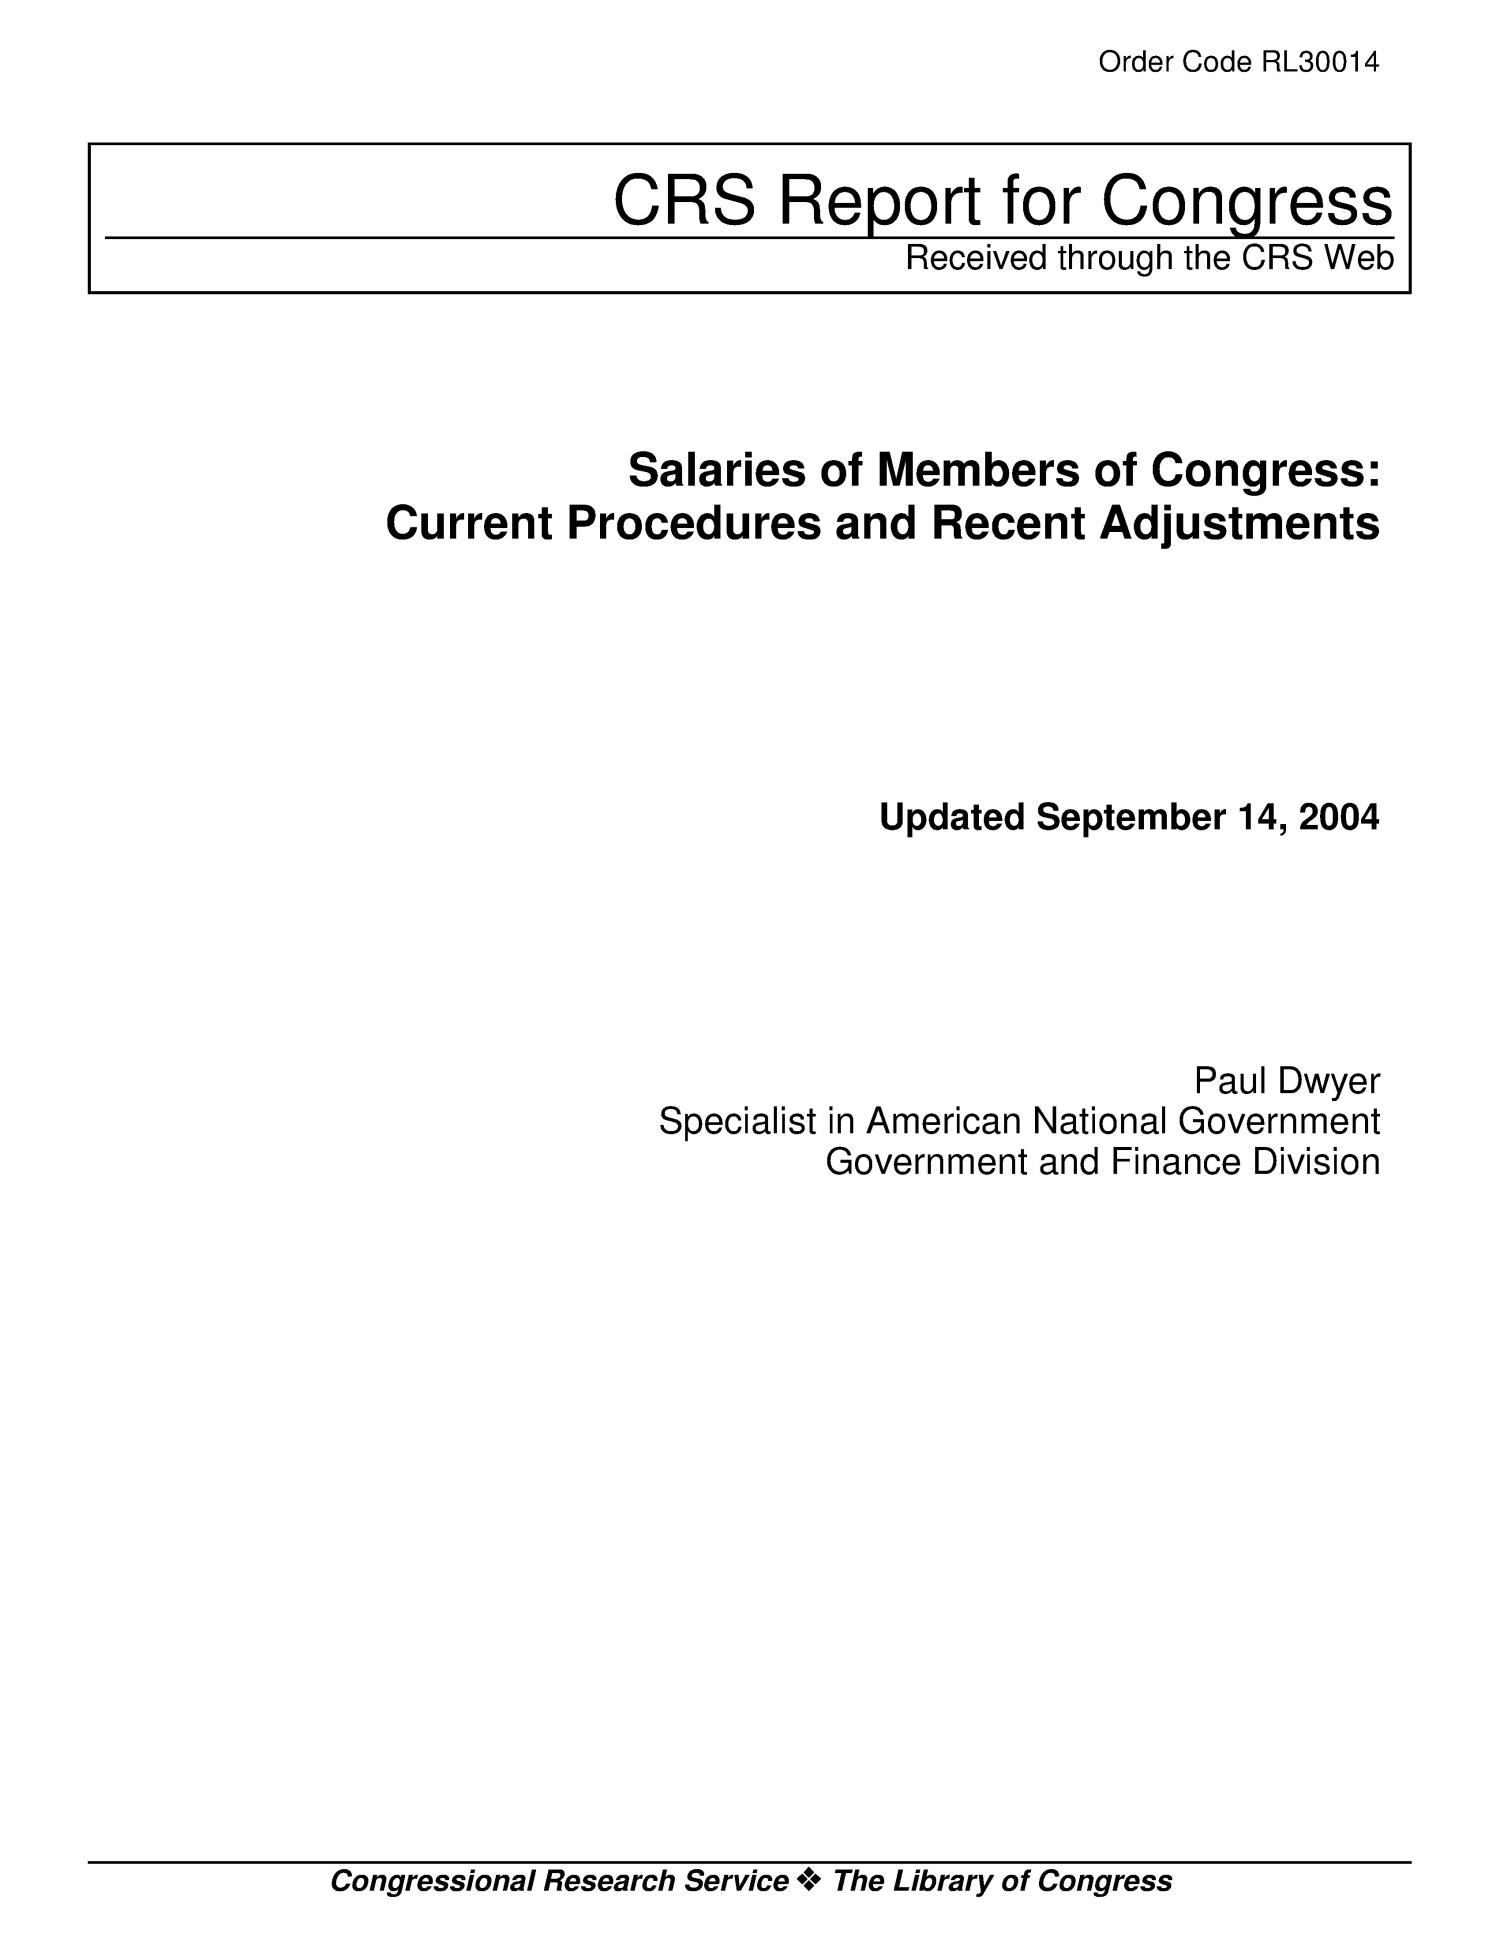 Salaries of Members of Congress Current Procedures and Recent